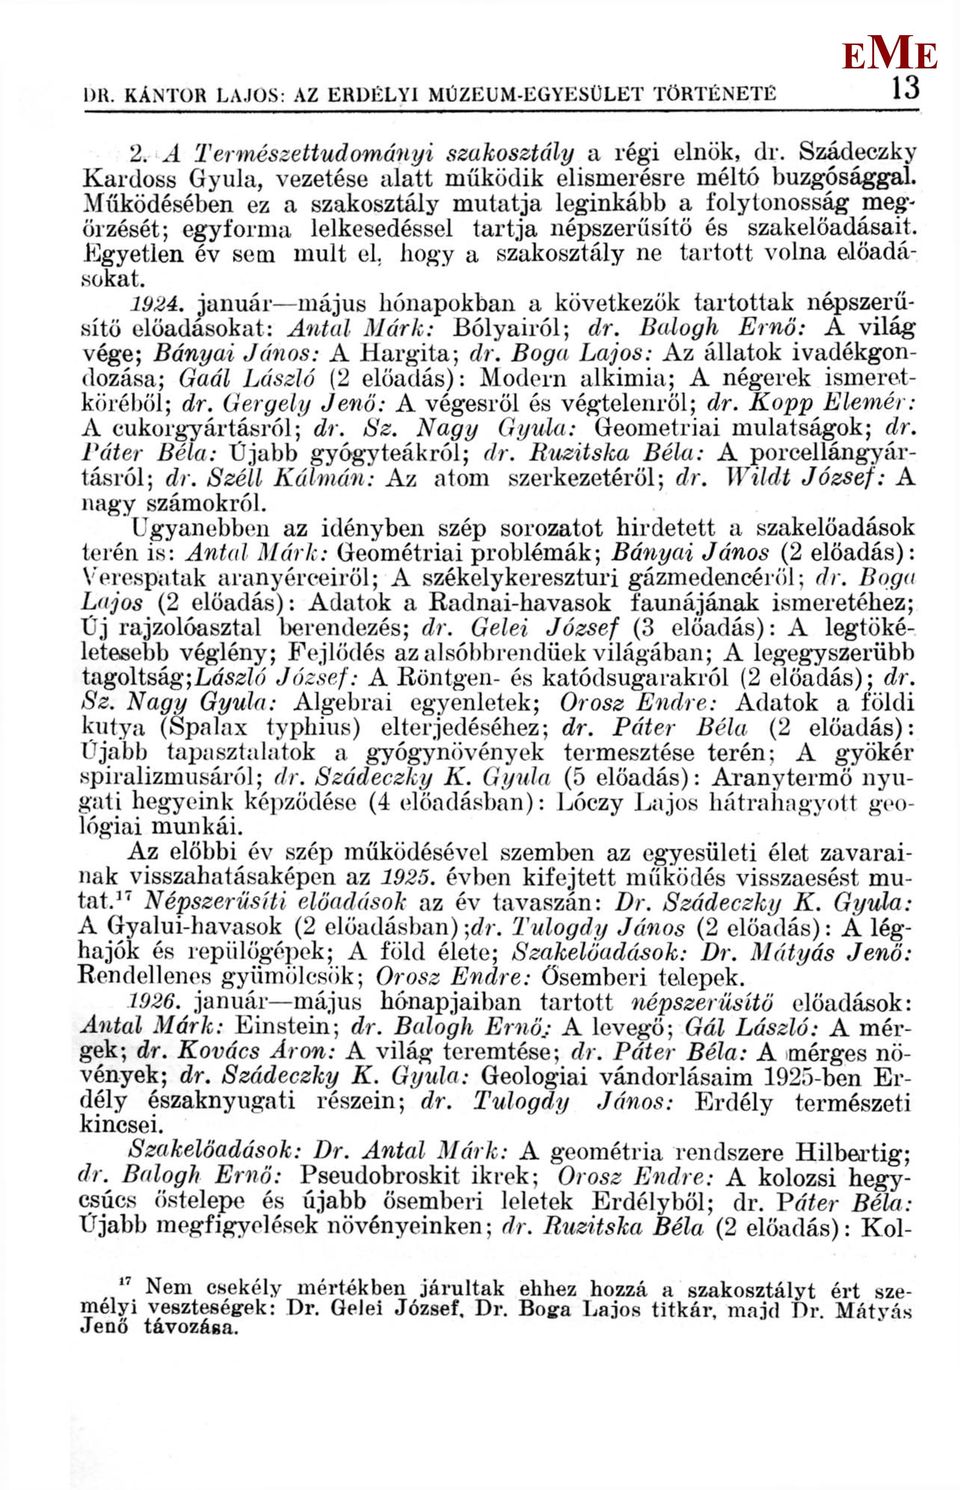 gyetlen év sem mult el hogy a szakosztály ne tartott volna előadásokat. 1924. január május hónapokban a következők tartottak népszerűsítő előadásokat: Antal árk: Bolyairól; dr.